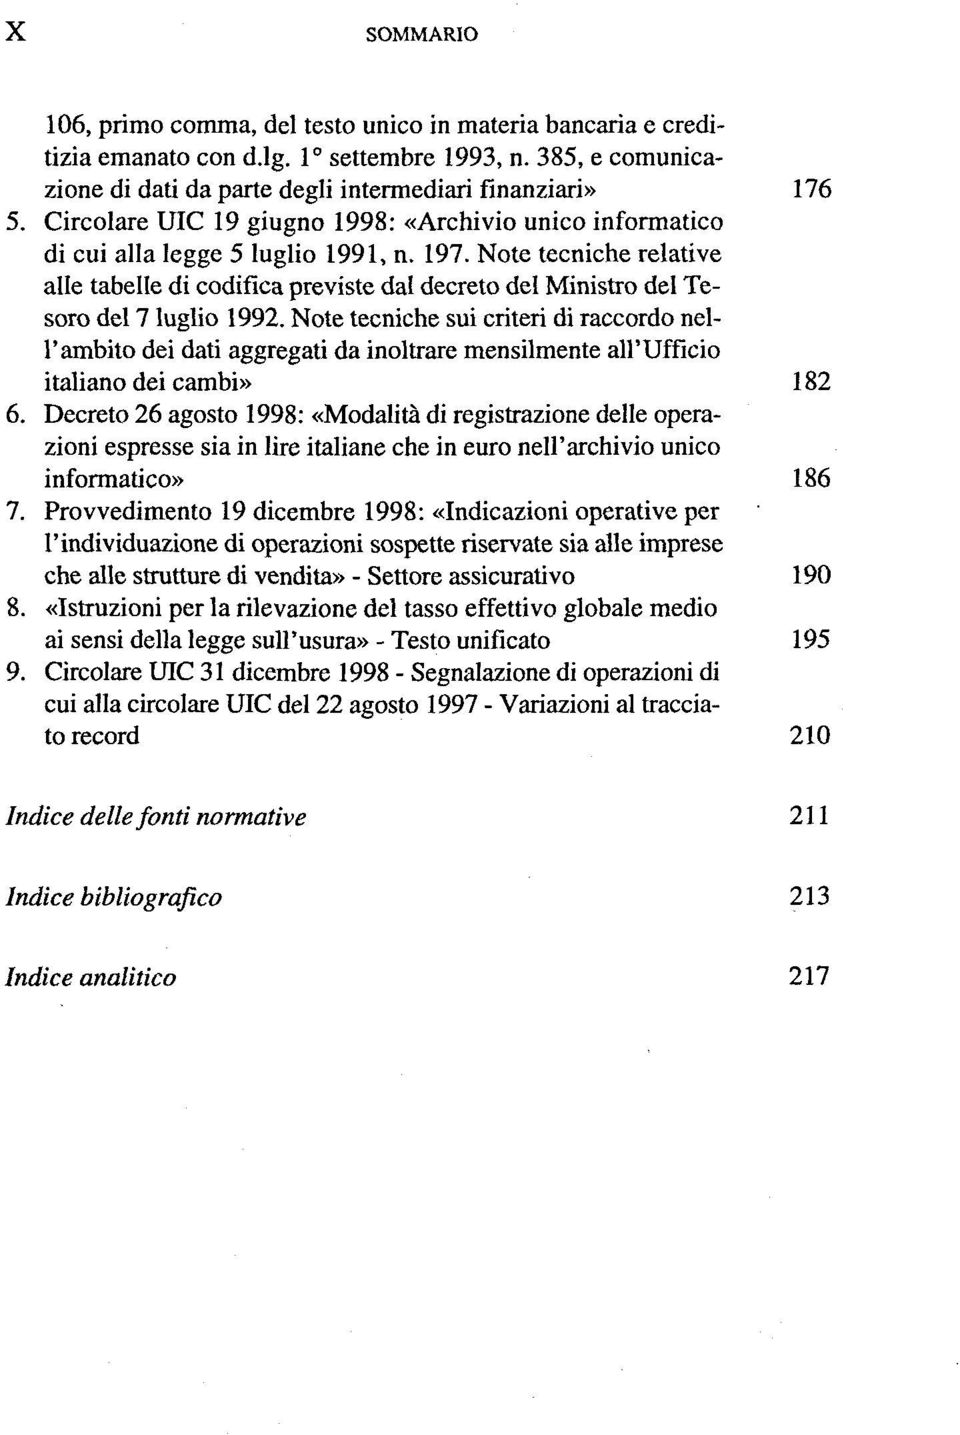 Note tecniche relative alle tabelle di codifica previste dal decreto del Ministro del Tesoro del 7 luglio 1992.